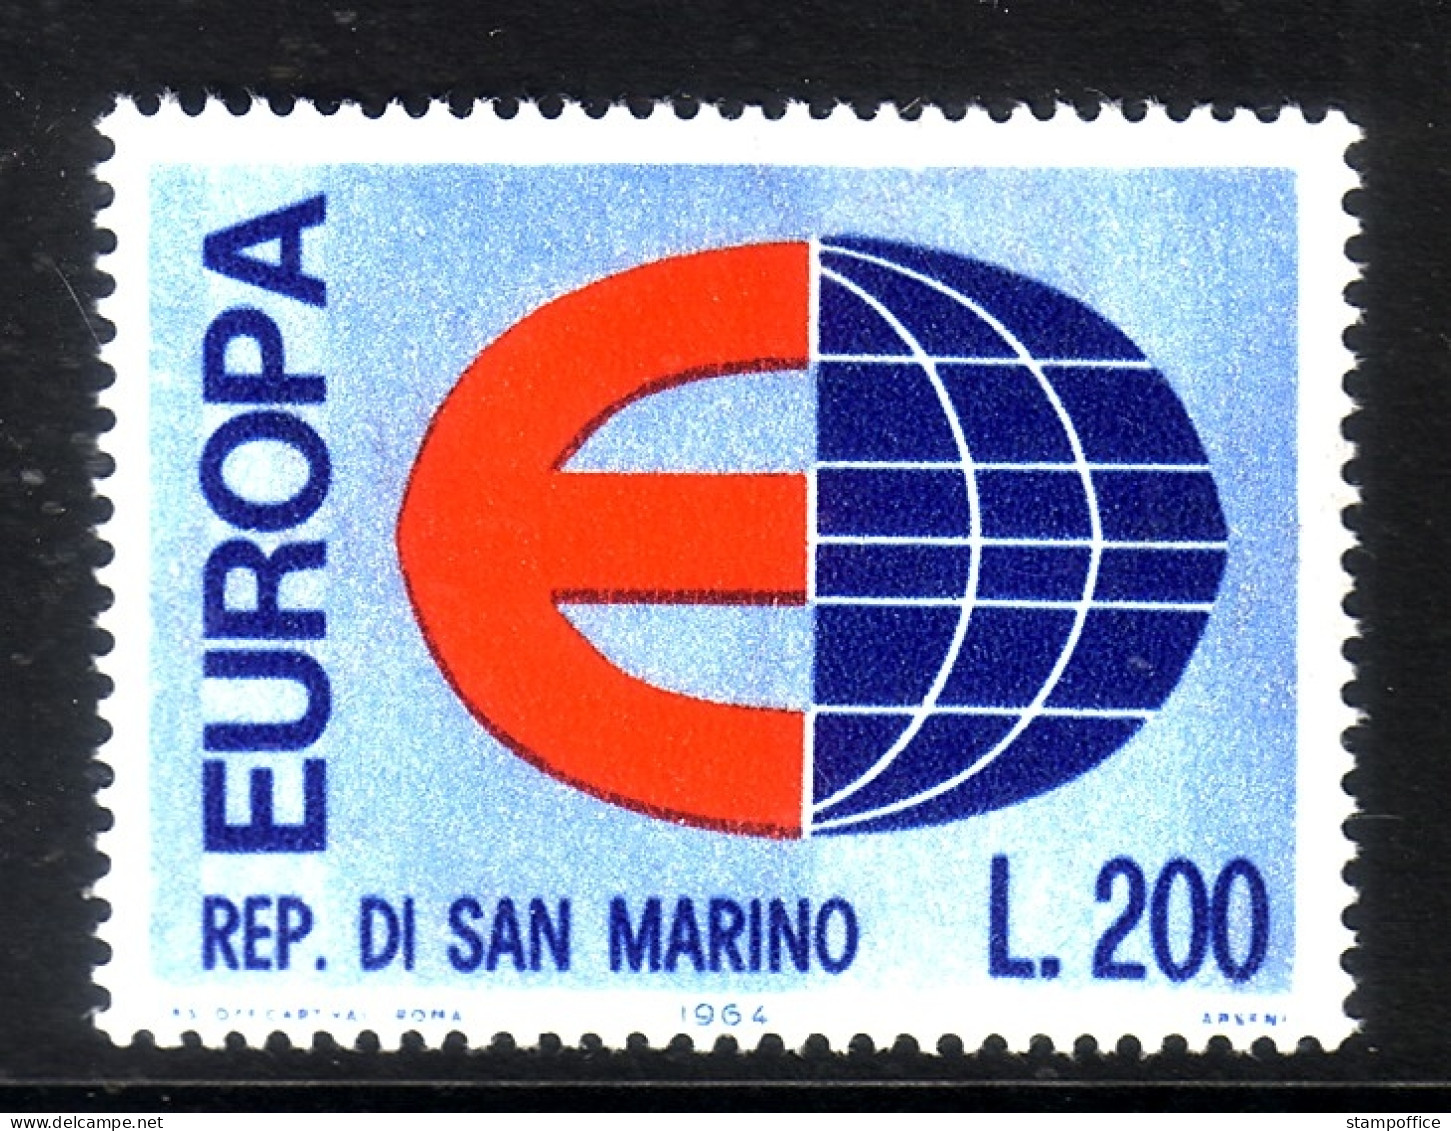 SAN MARINO MI-NR. 826 POSTFRISCH(MINT) EUROPA CEPT 1964 - 1964